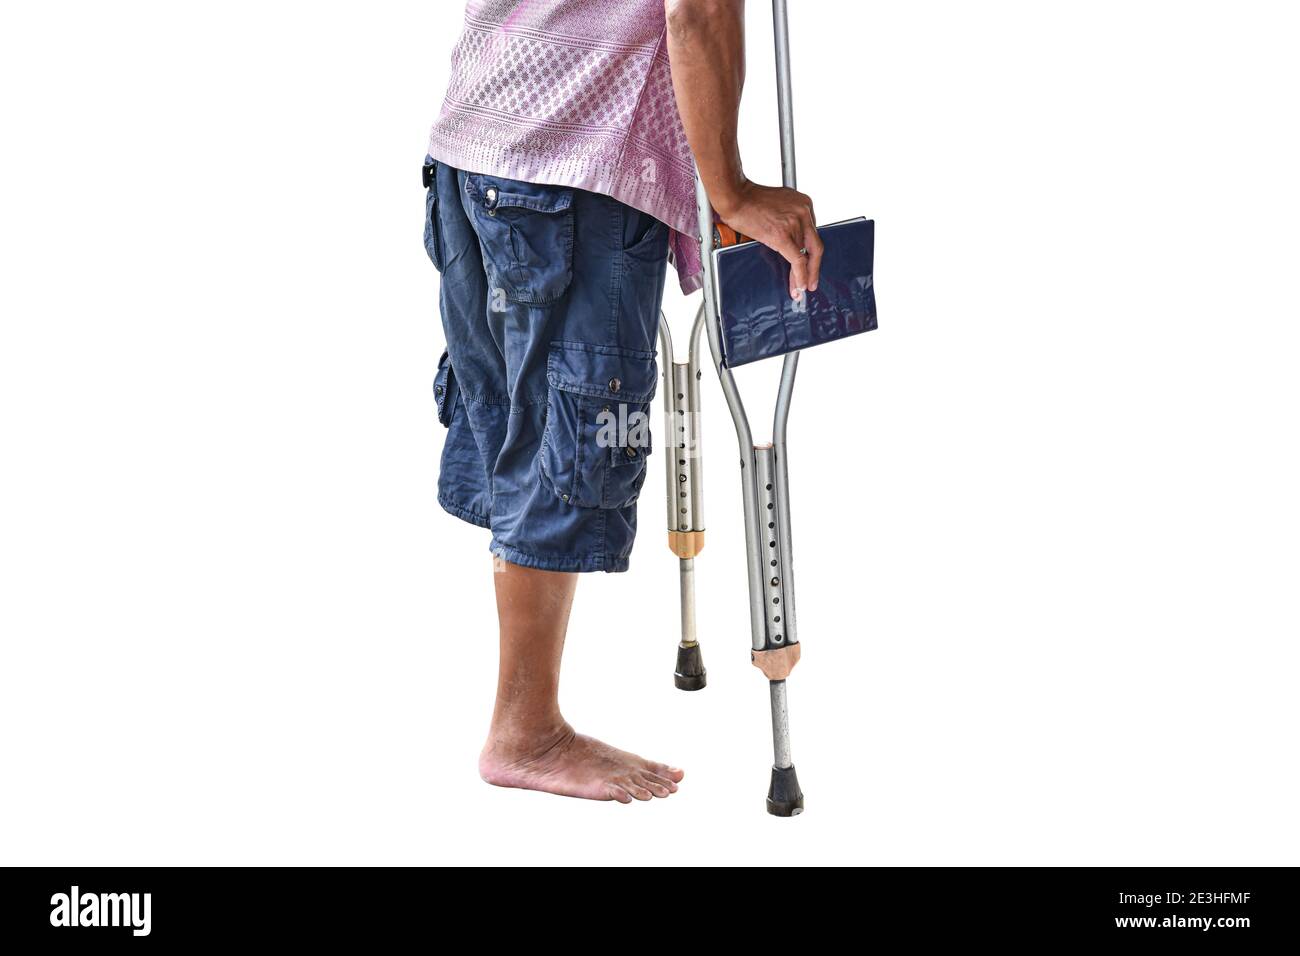 Maschio con disabilità senza gamba su stampelle, isolato su sfondo bianco con tracciato di ritaglio. Foto Stock